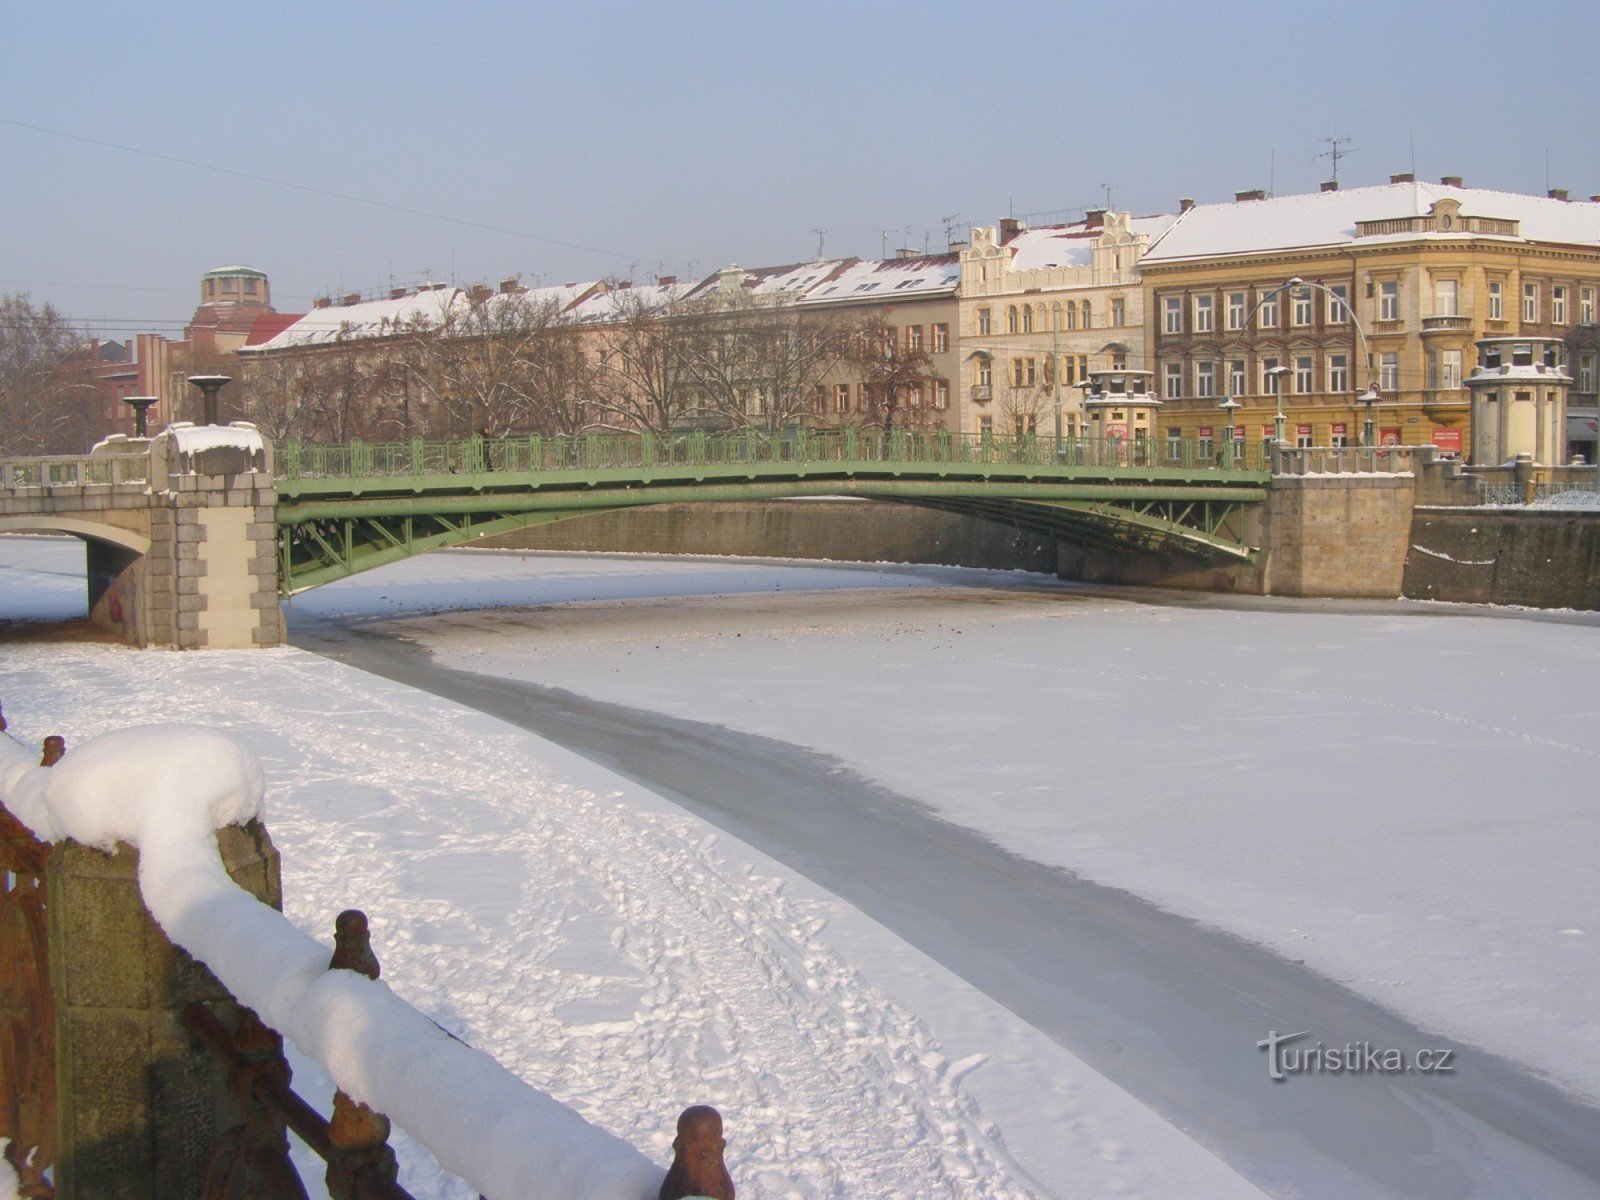 Eliščansko nabrežje in Praški most